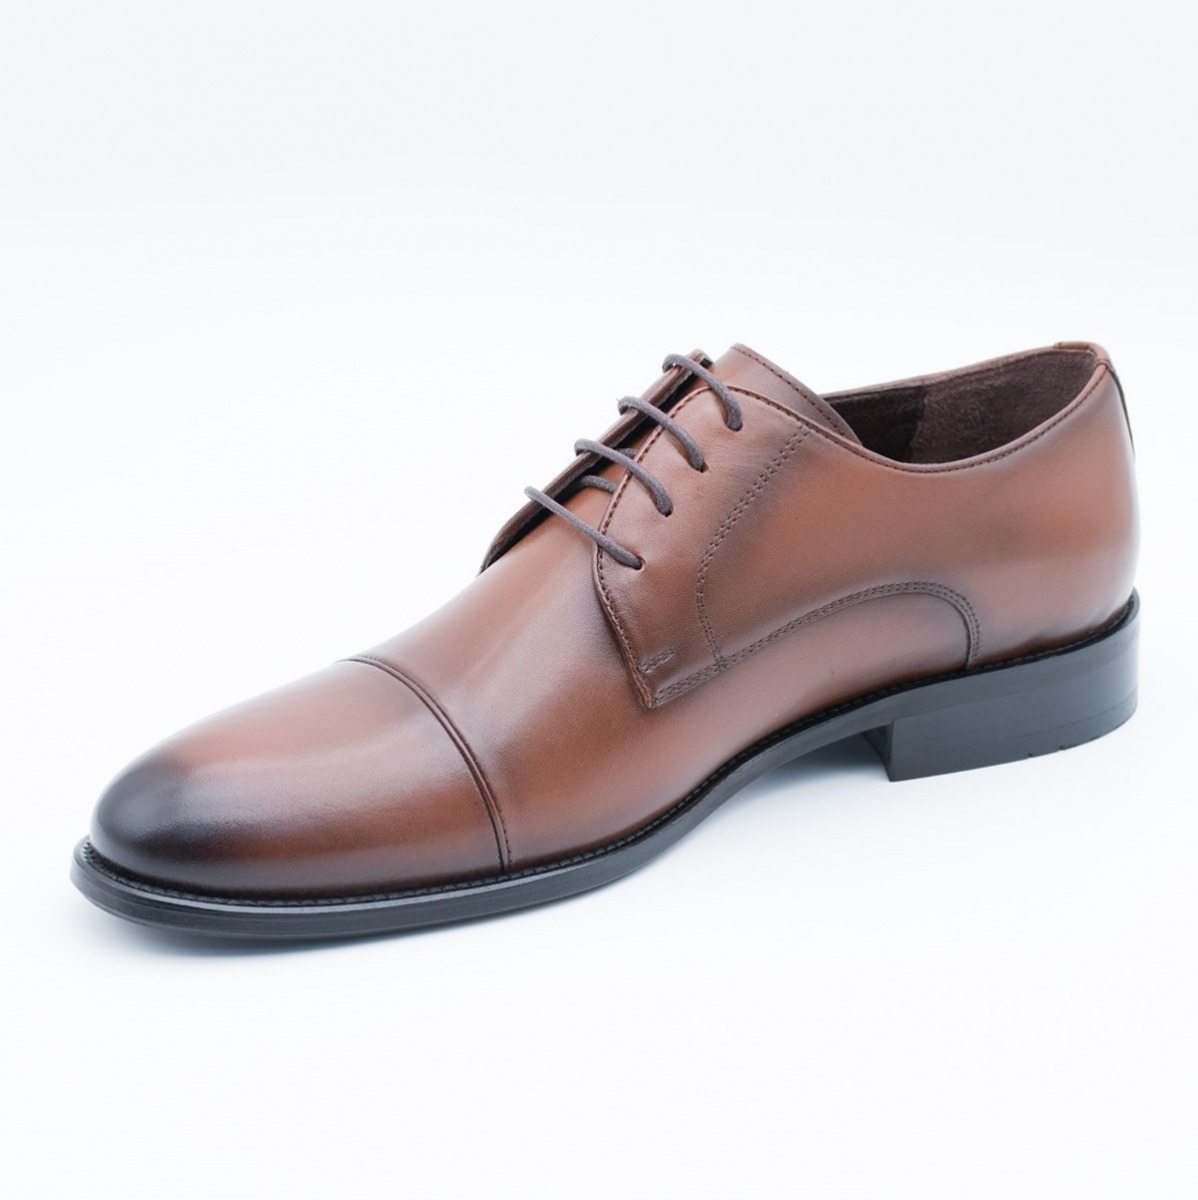 Flo Erkek Deri Klasik Ayakkabı İ17523-4 M 1000 TABA. 4